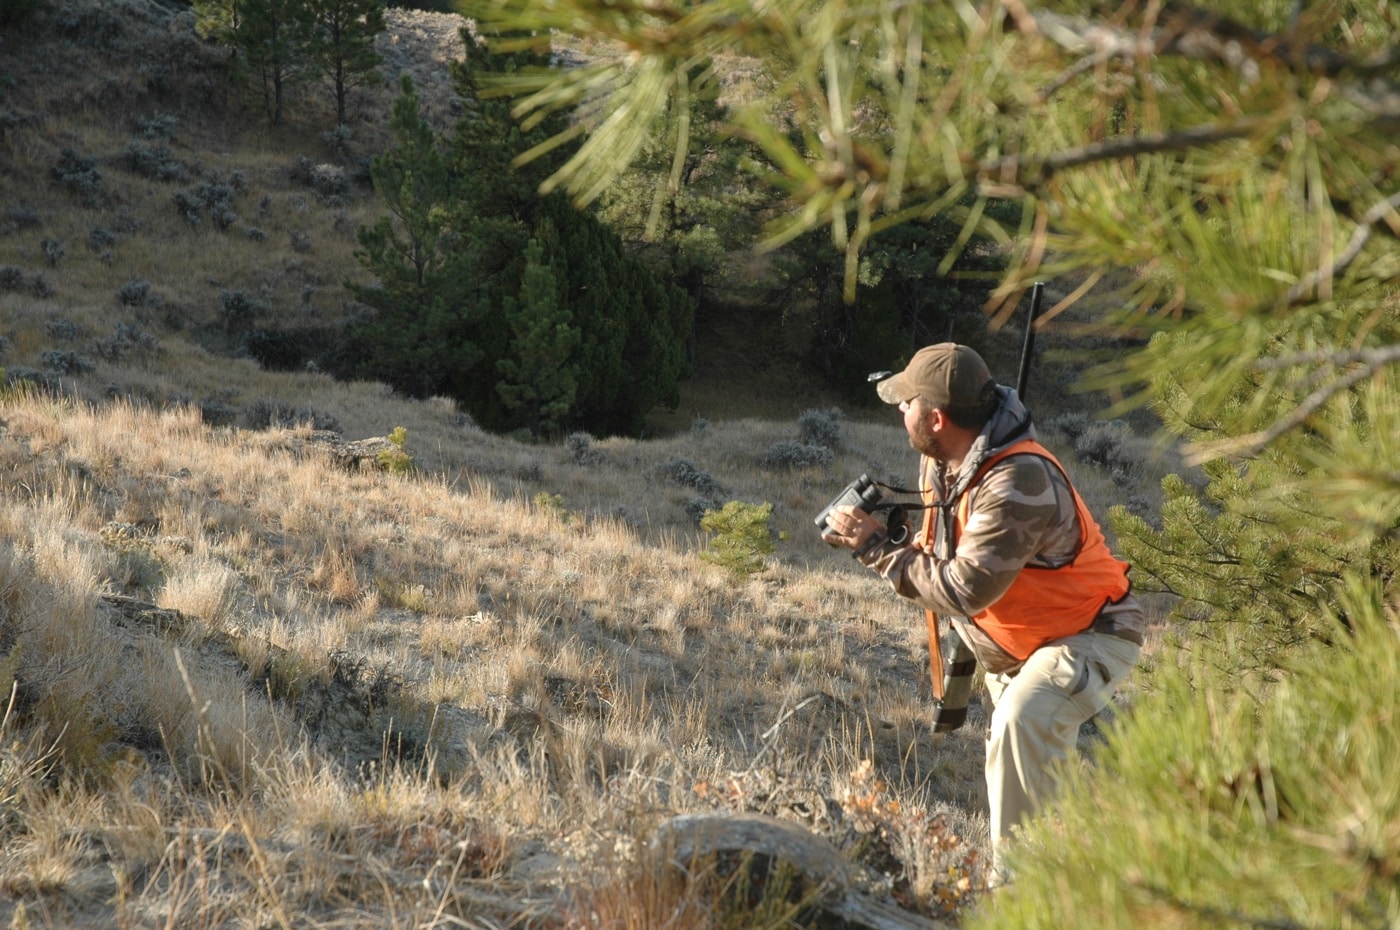 using binoculars in a deer hunt